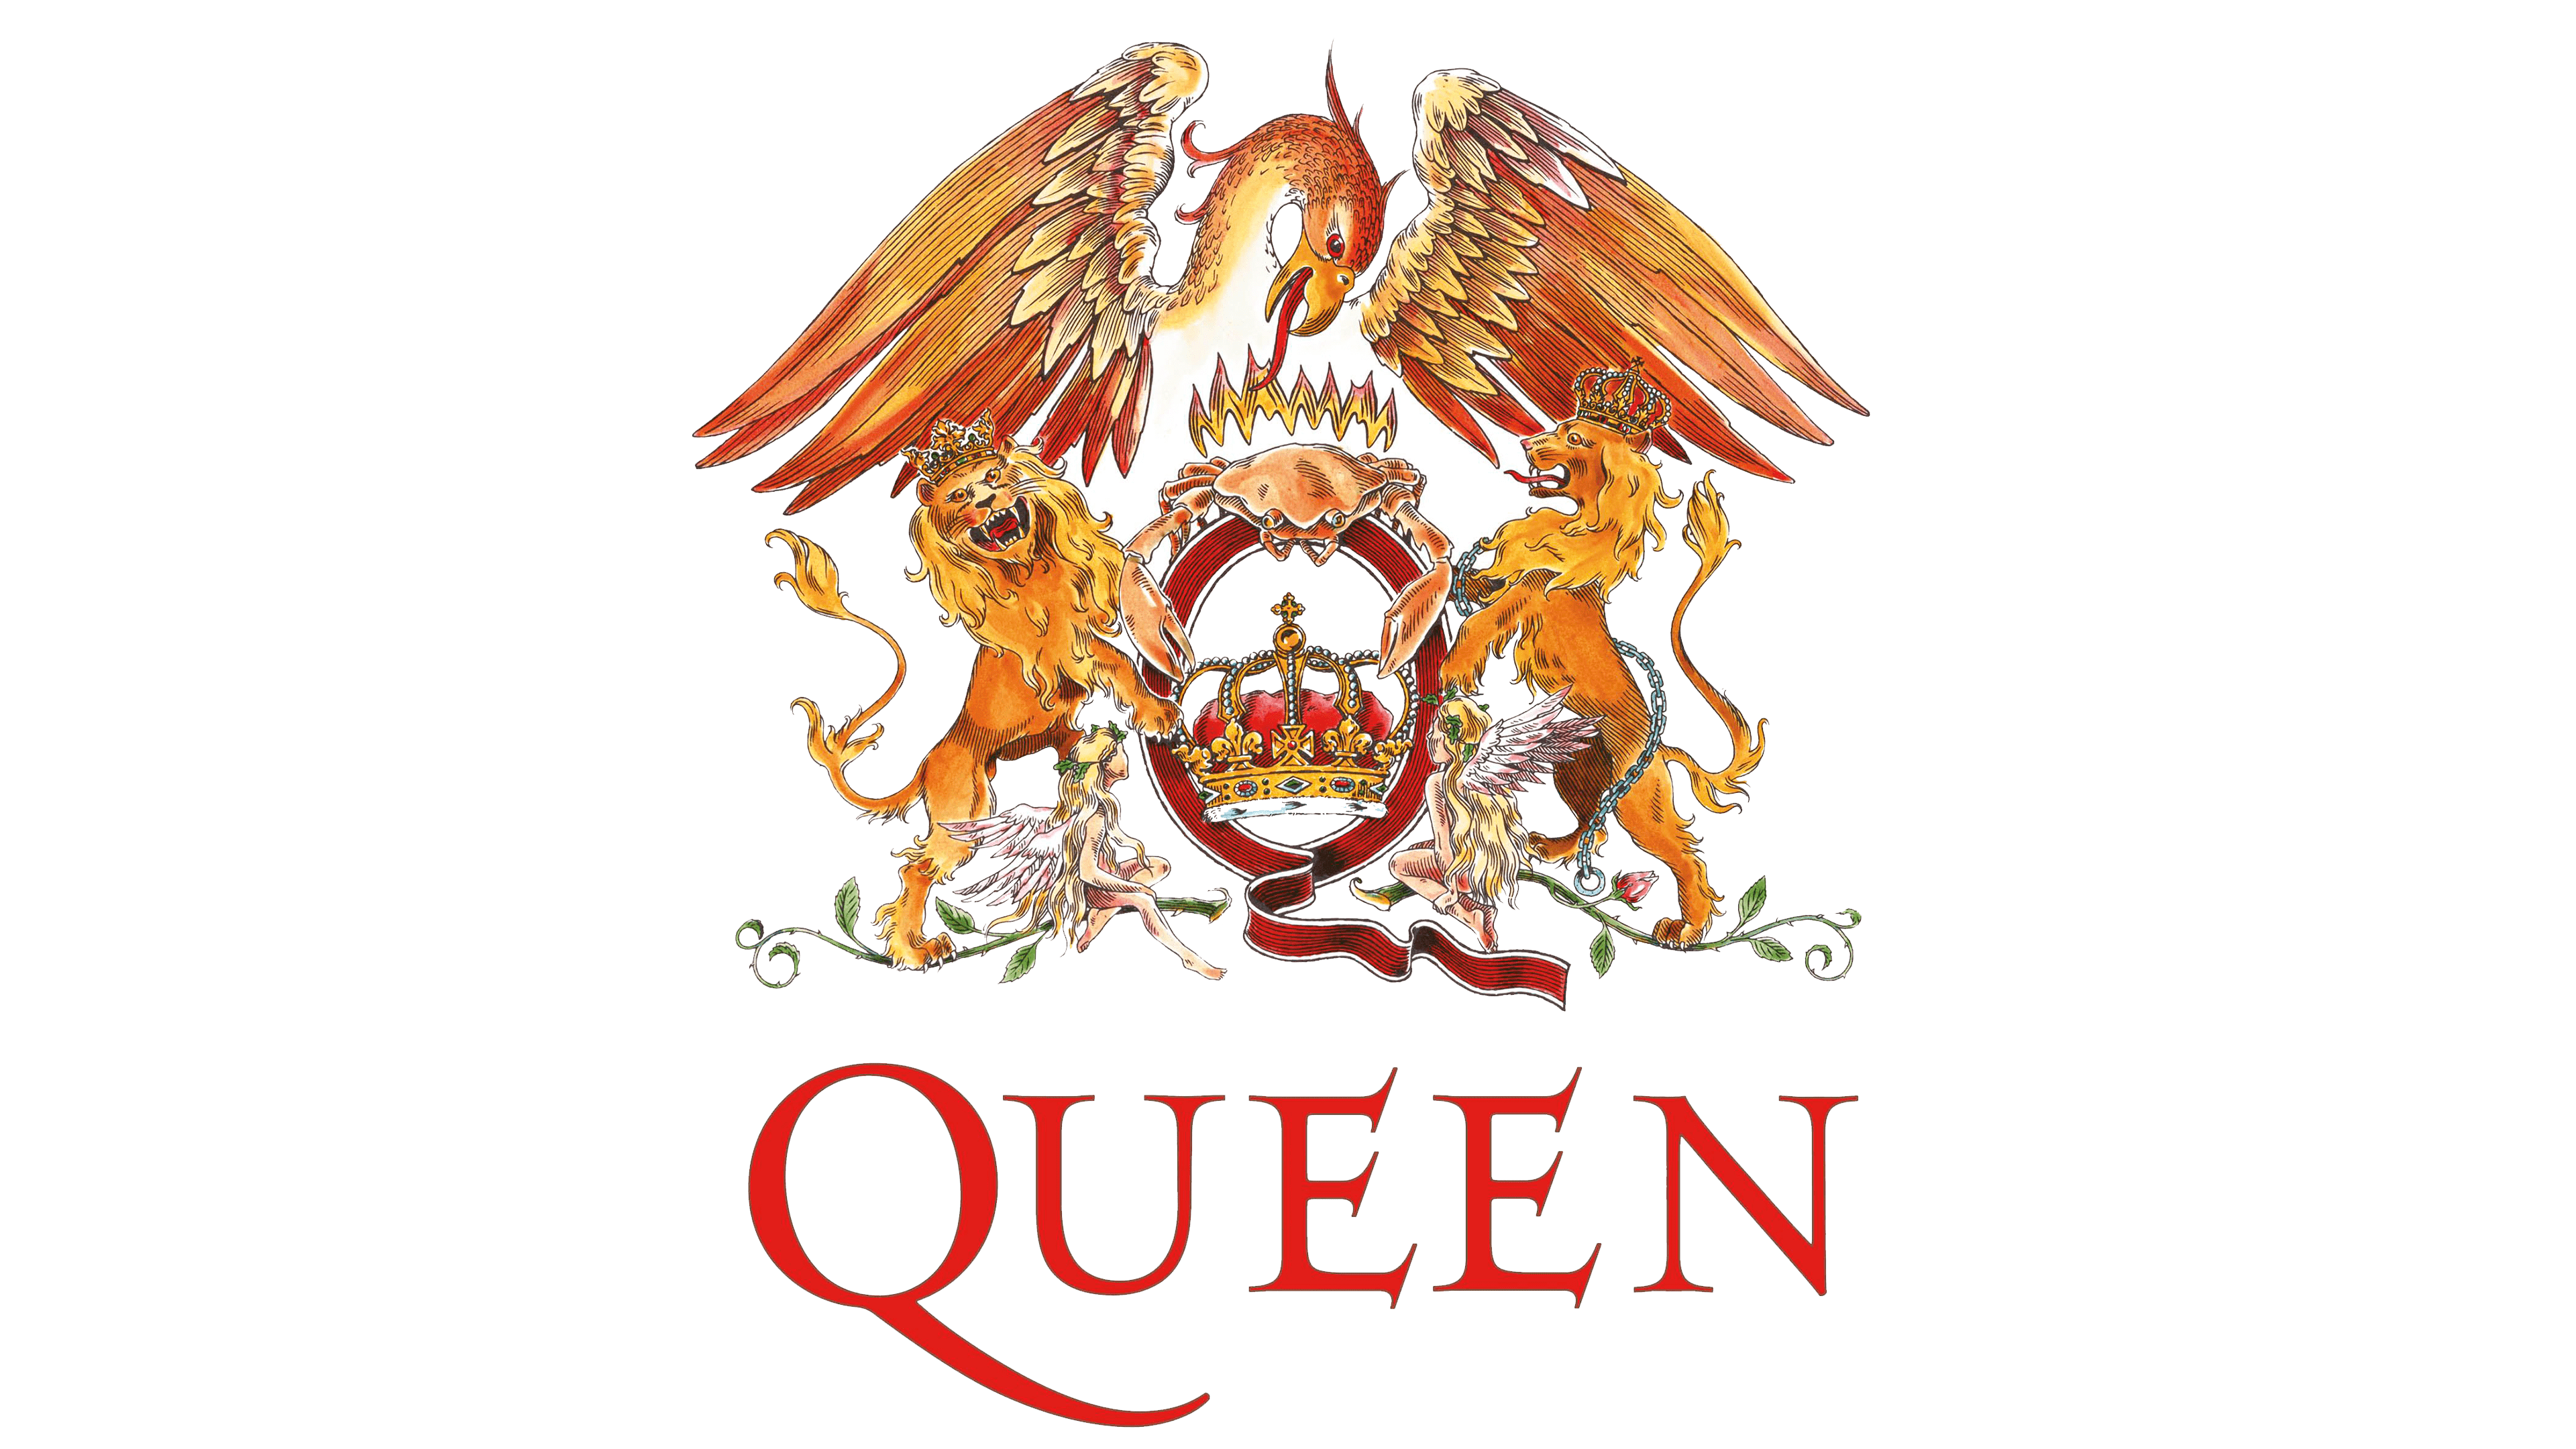 Qual o nome da música do grupo Queen símbolo dos Jogos Olímpicos de 1992?